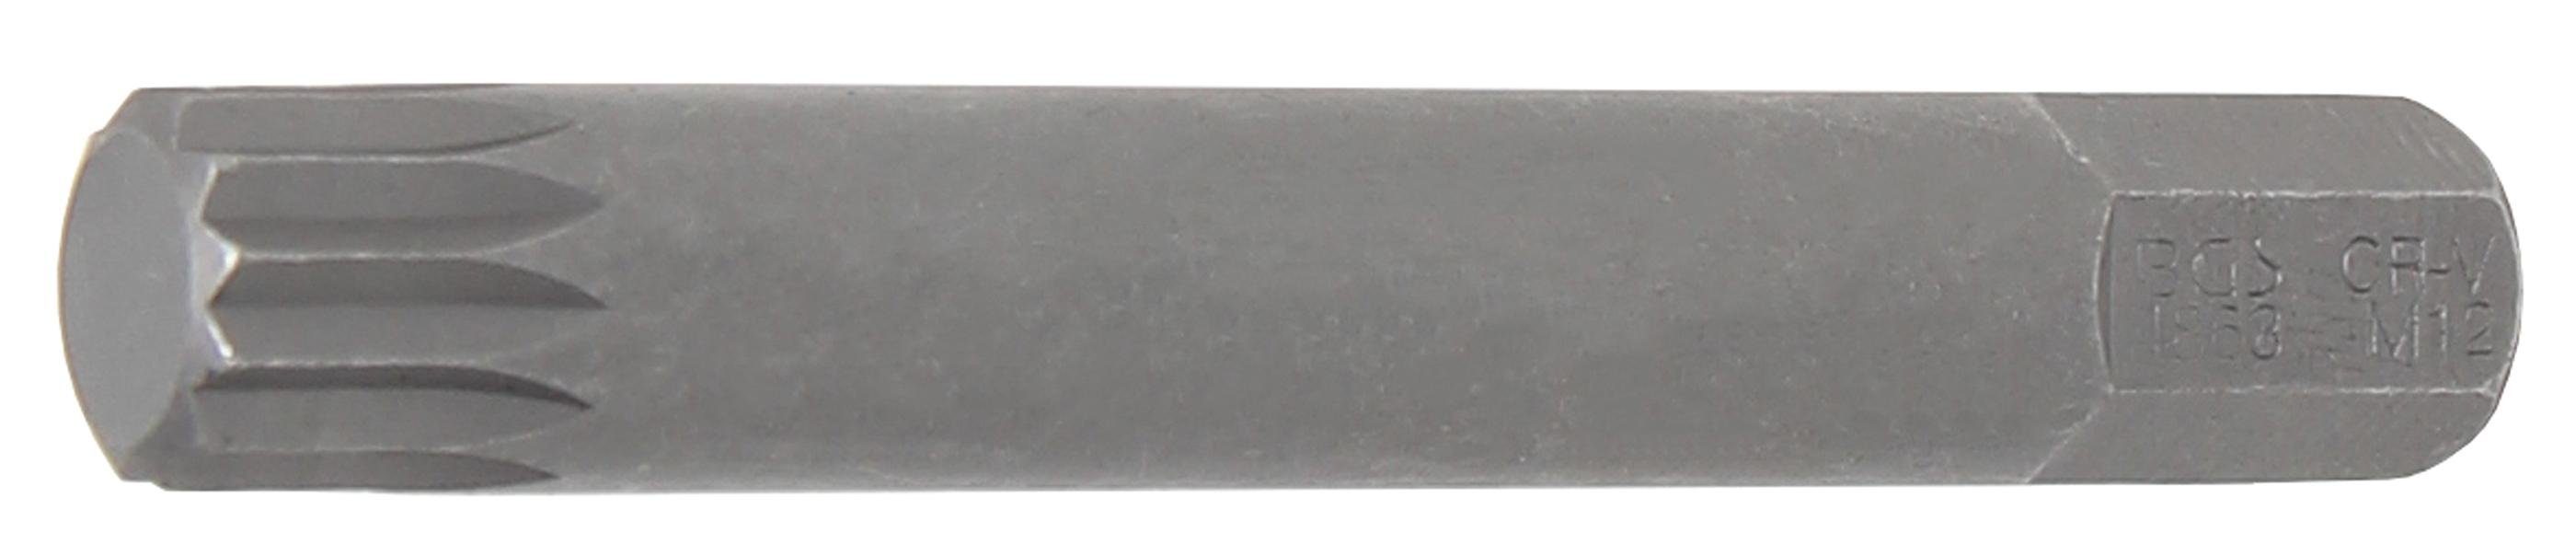 BGS technic Bit-Schraubendreher Bit, Länge 75 mm, Antrieb Außensechskant 10 mm (3/8), Innenvielzahn (für XZN) M12